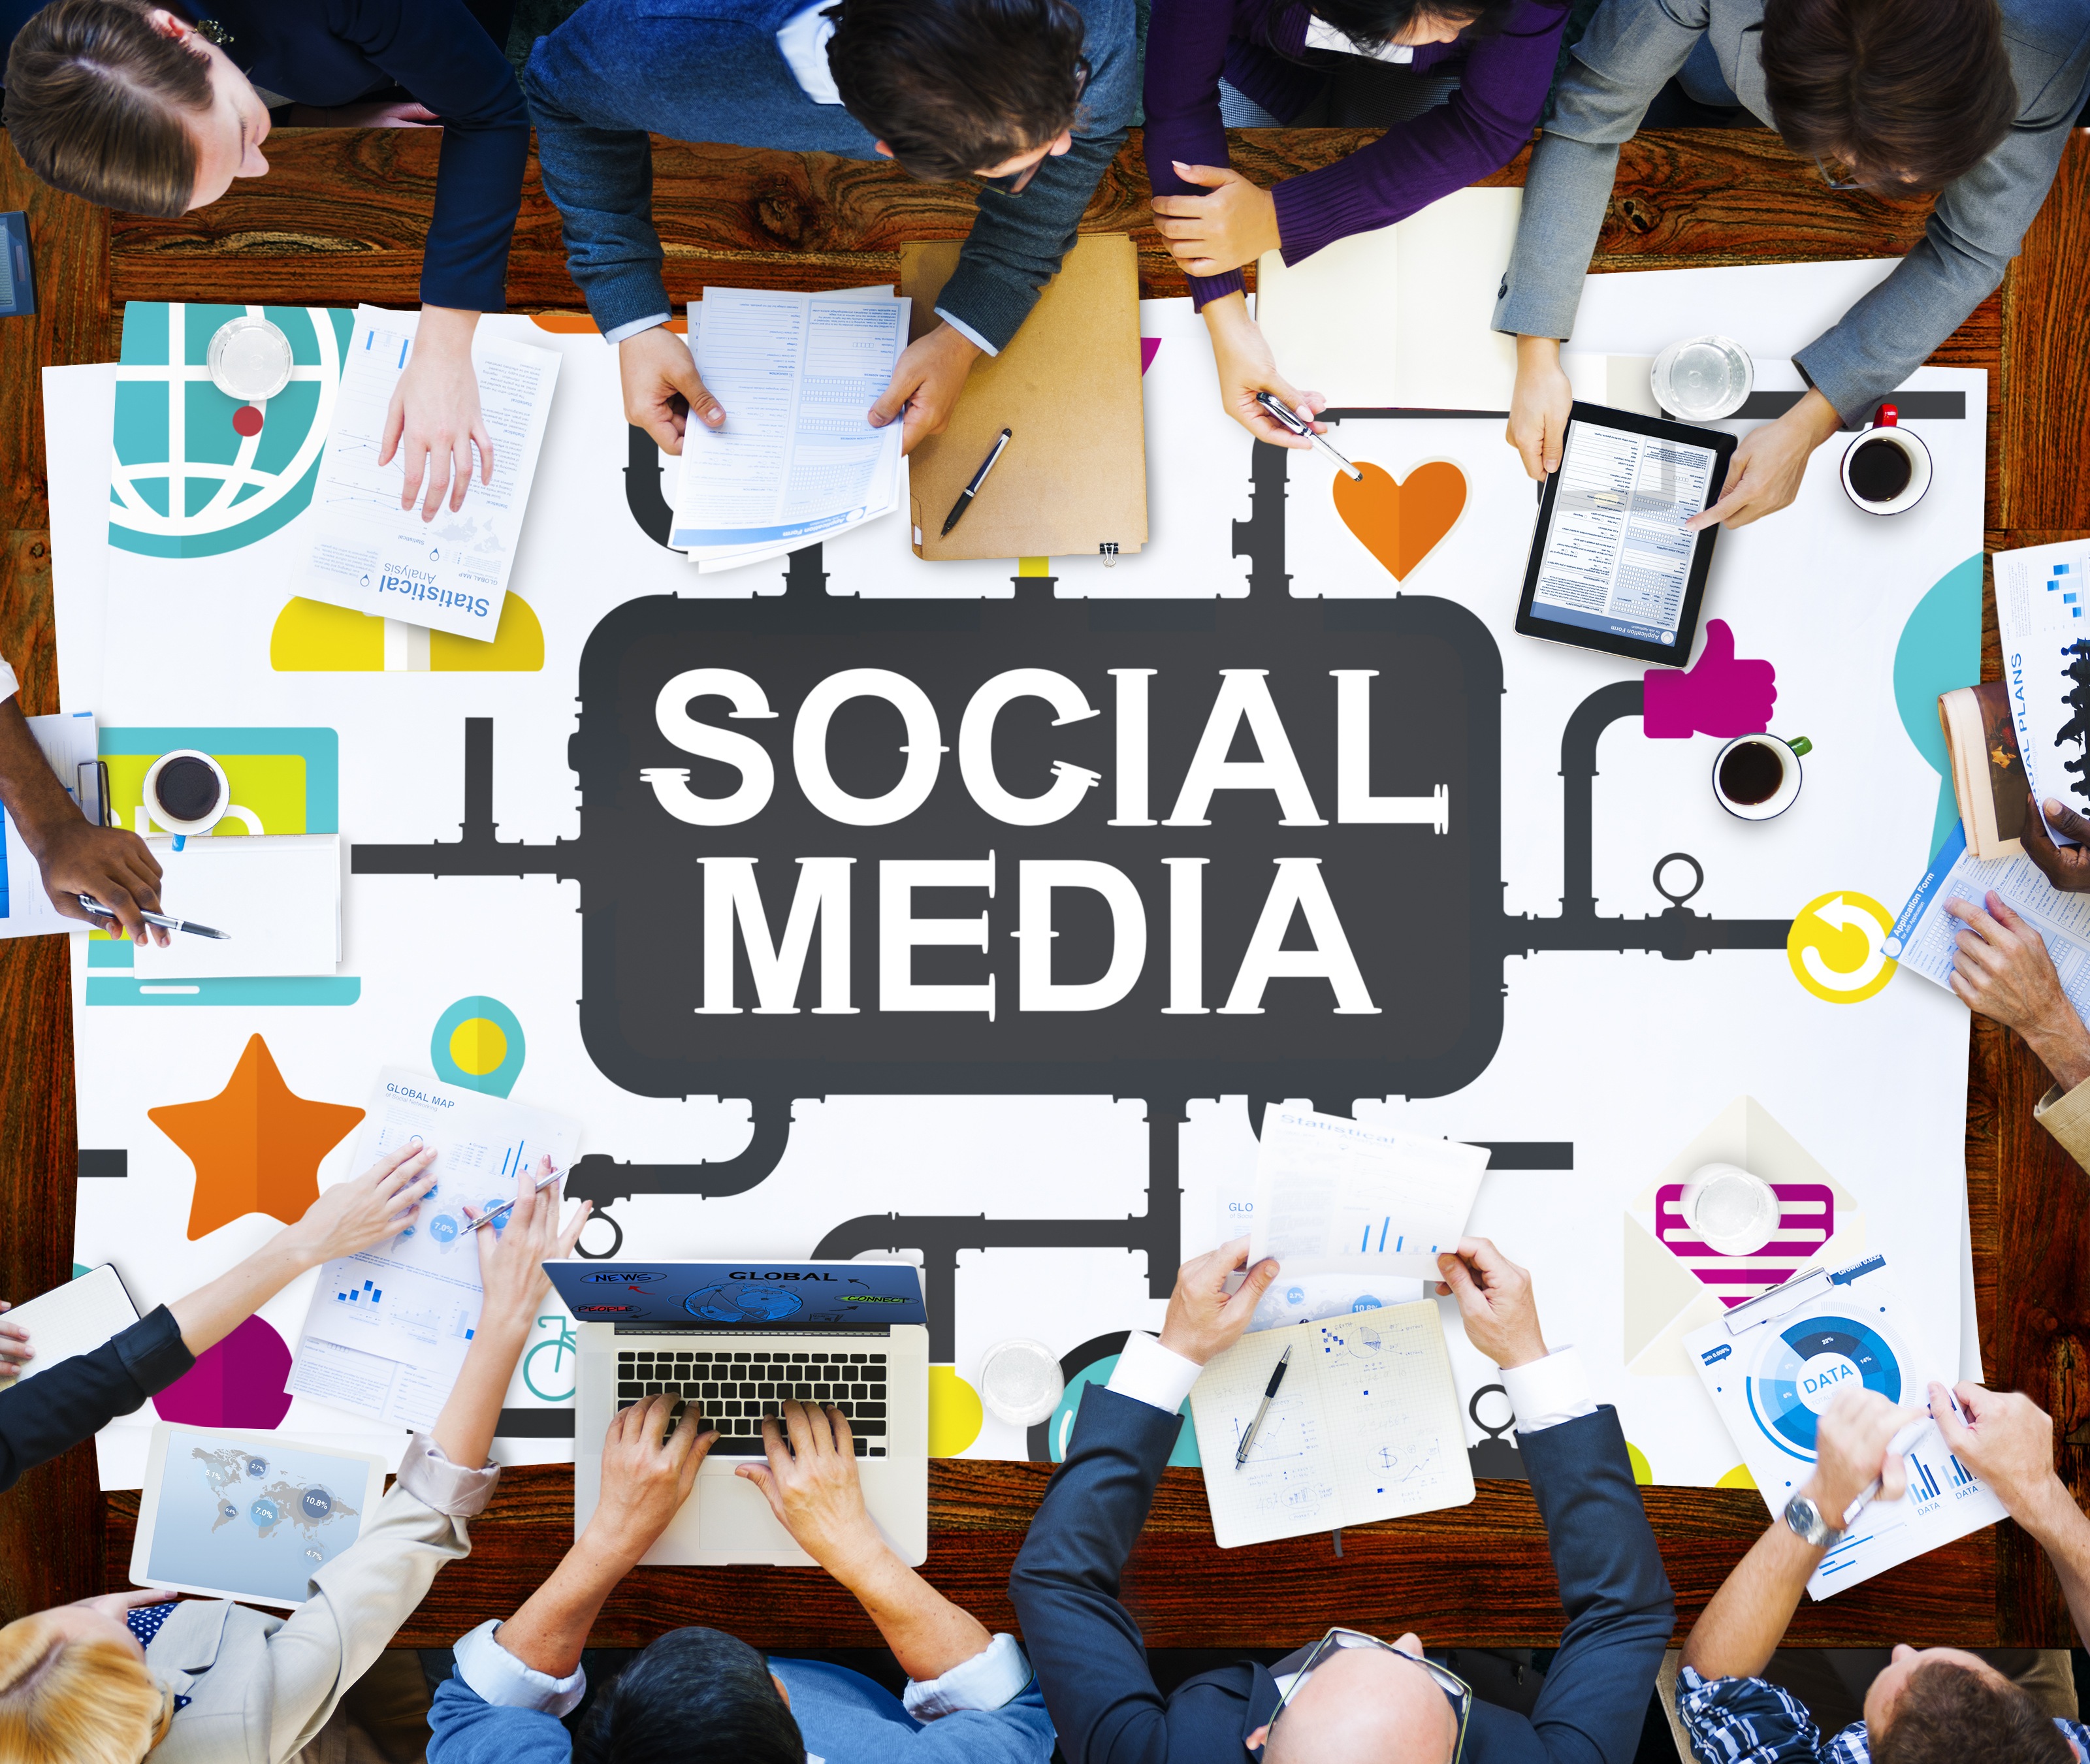 Social Media Planning